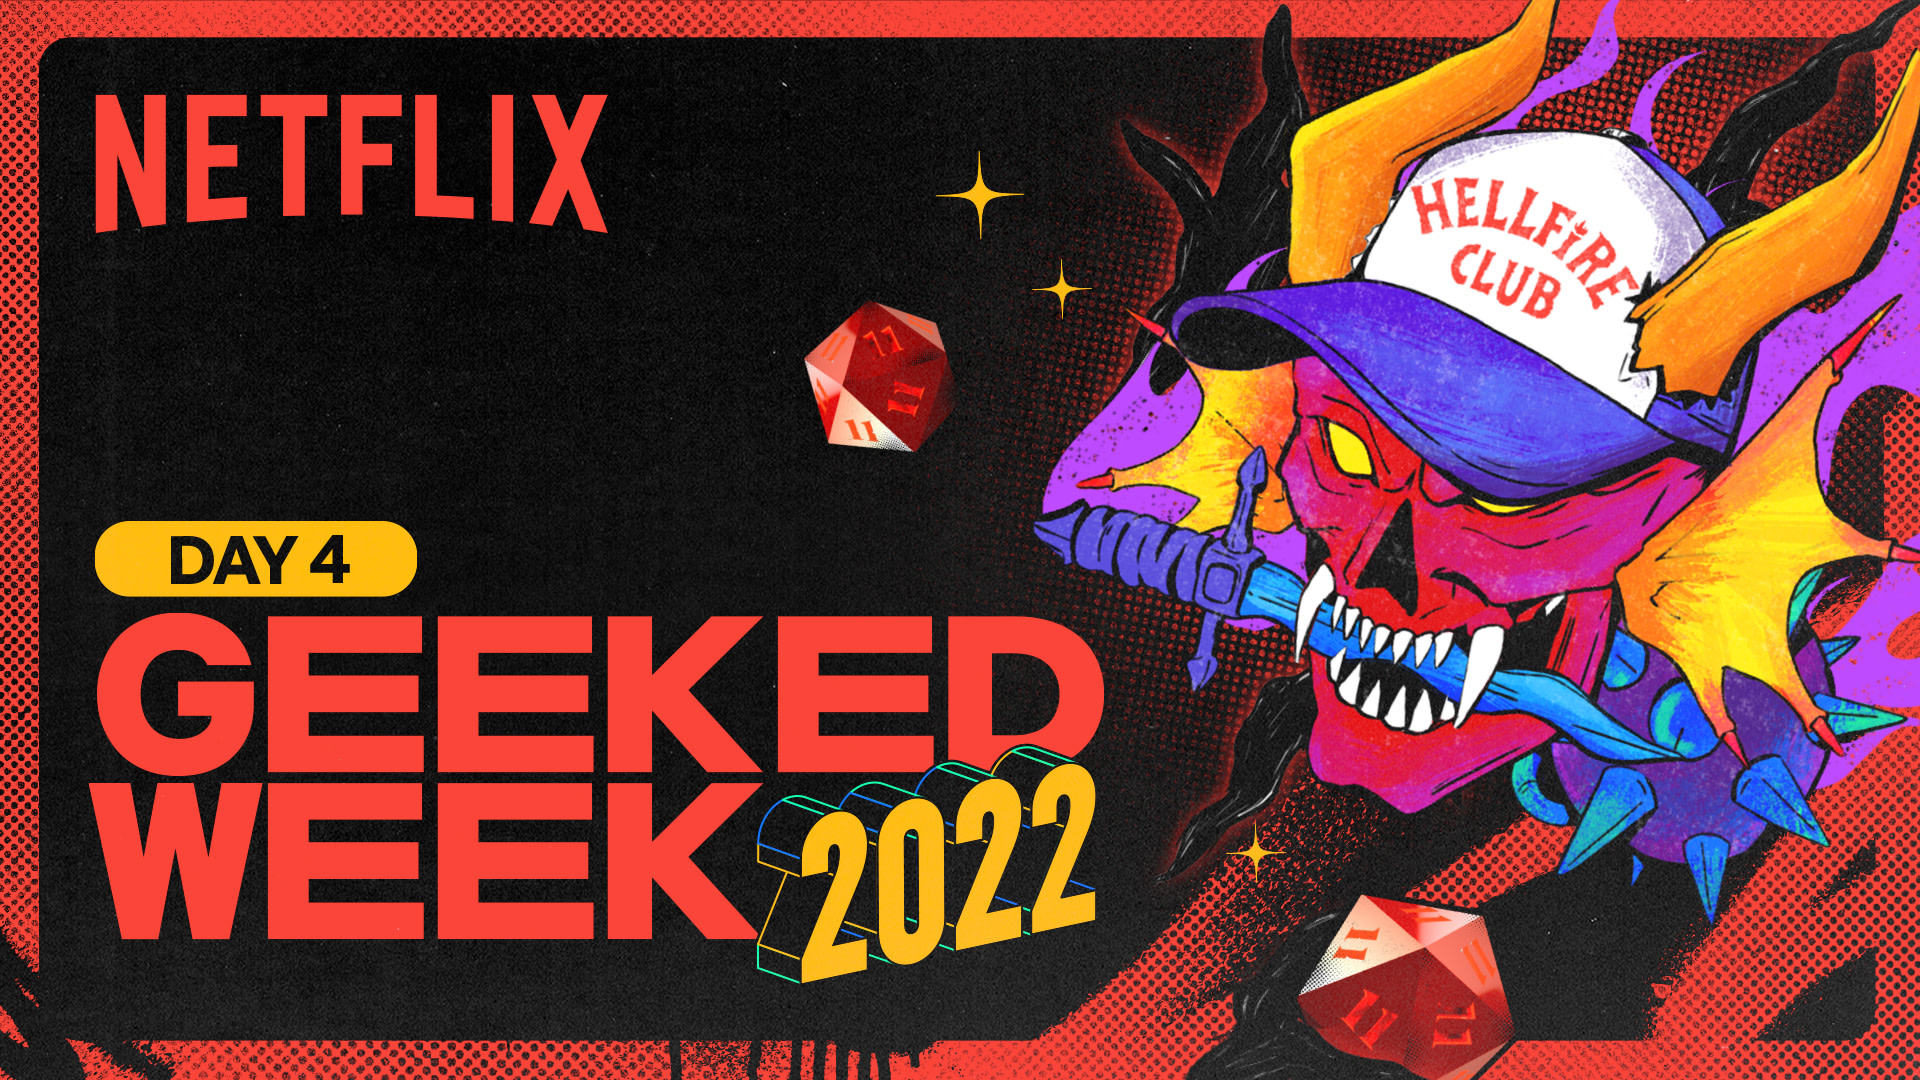 Podsumowanie Geeked Week 2022: wszystkie ciekawostki zza kulis serialu podczas Dnia „Stranger Things”